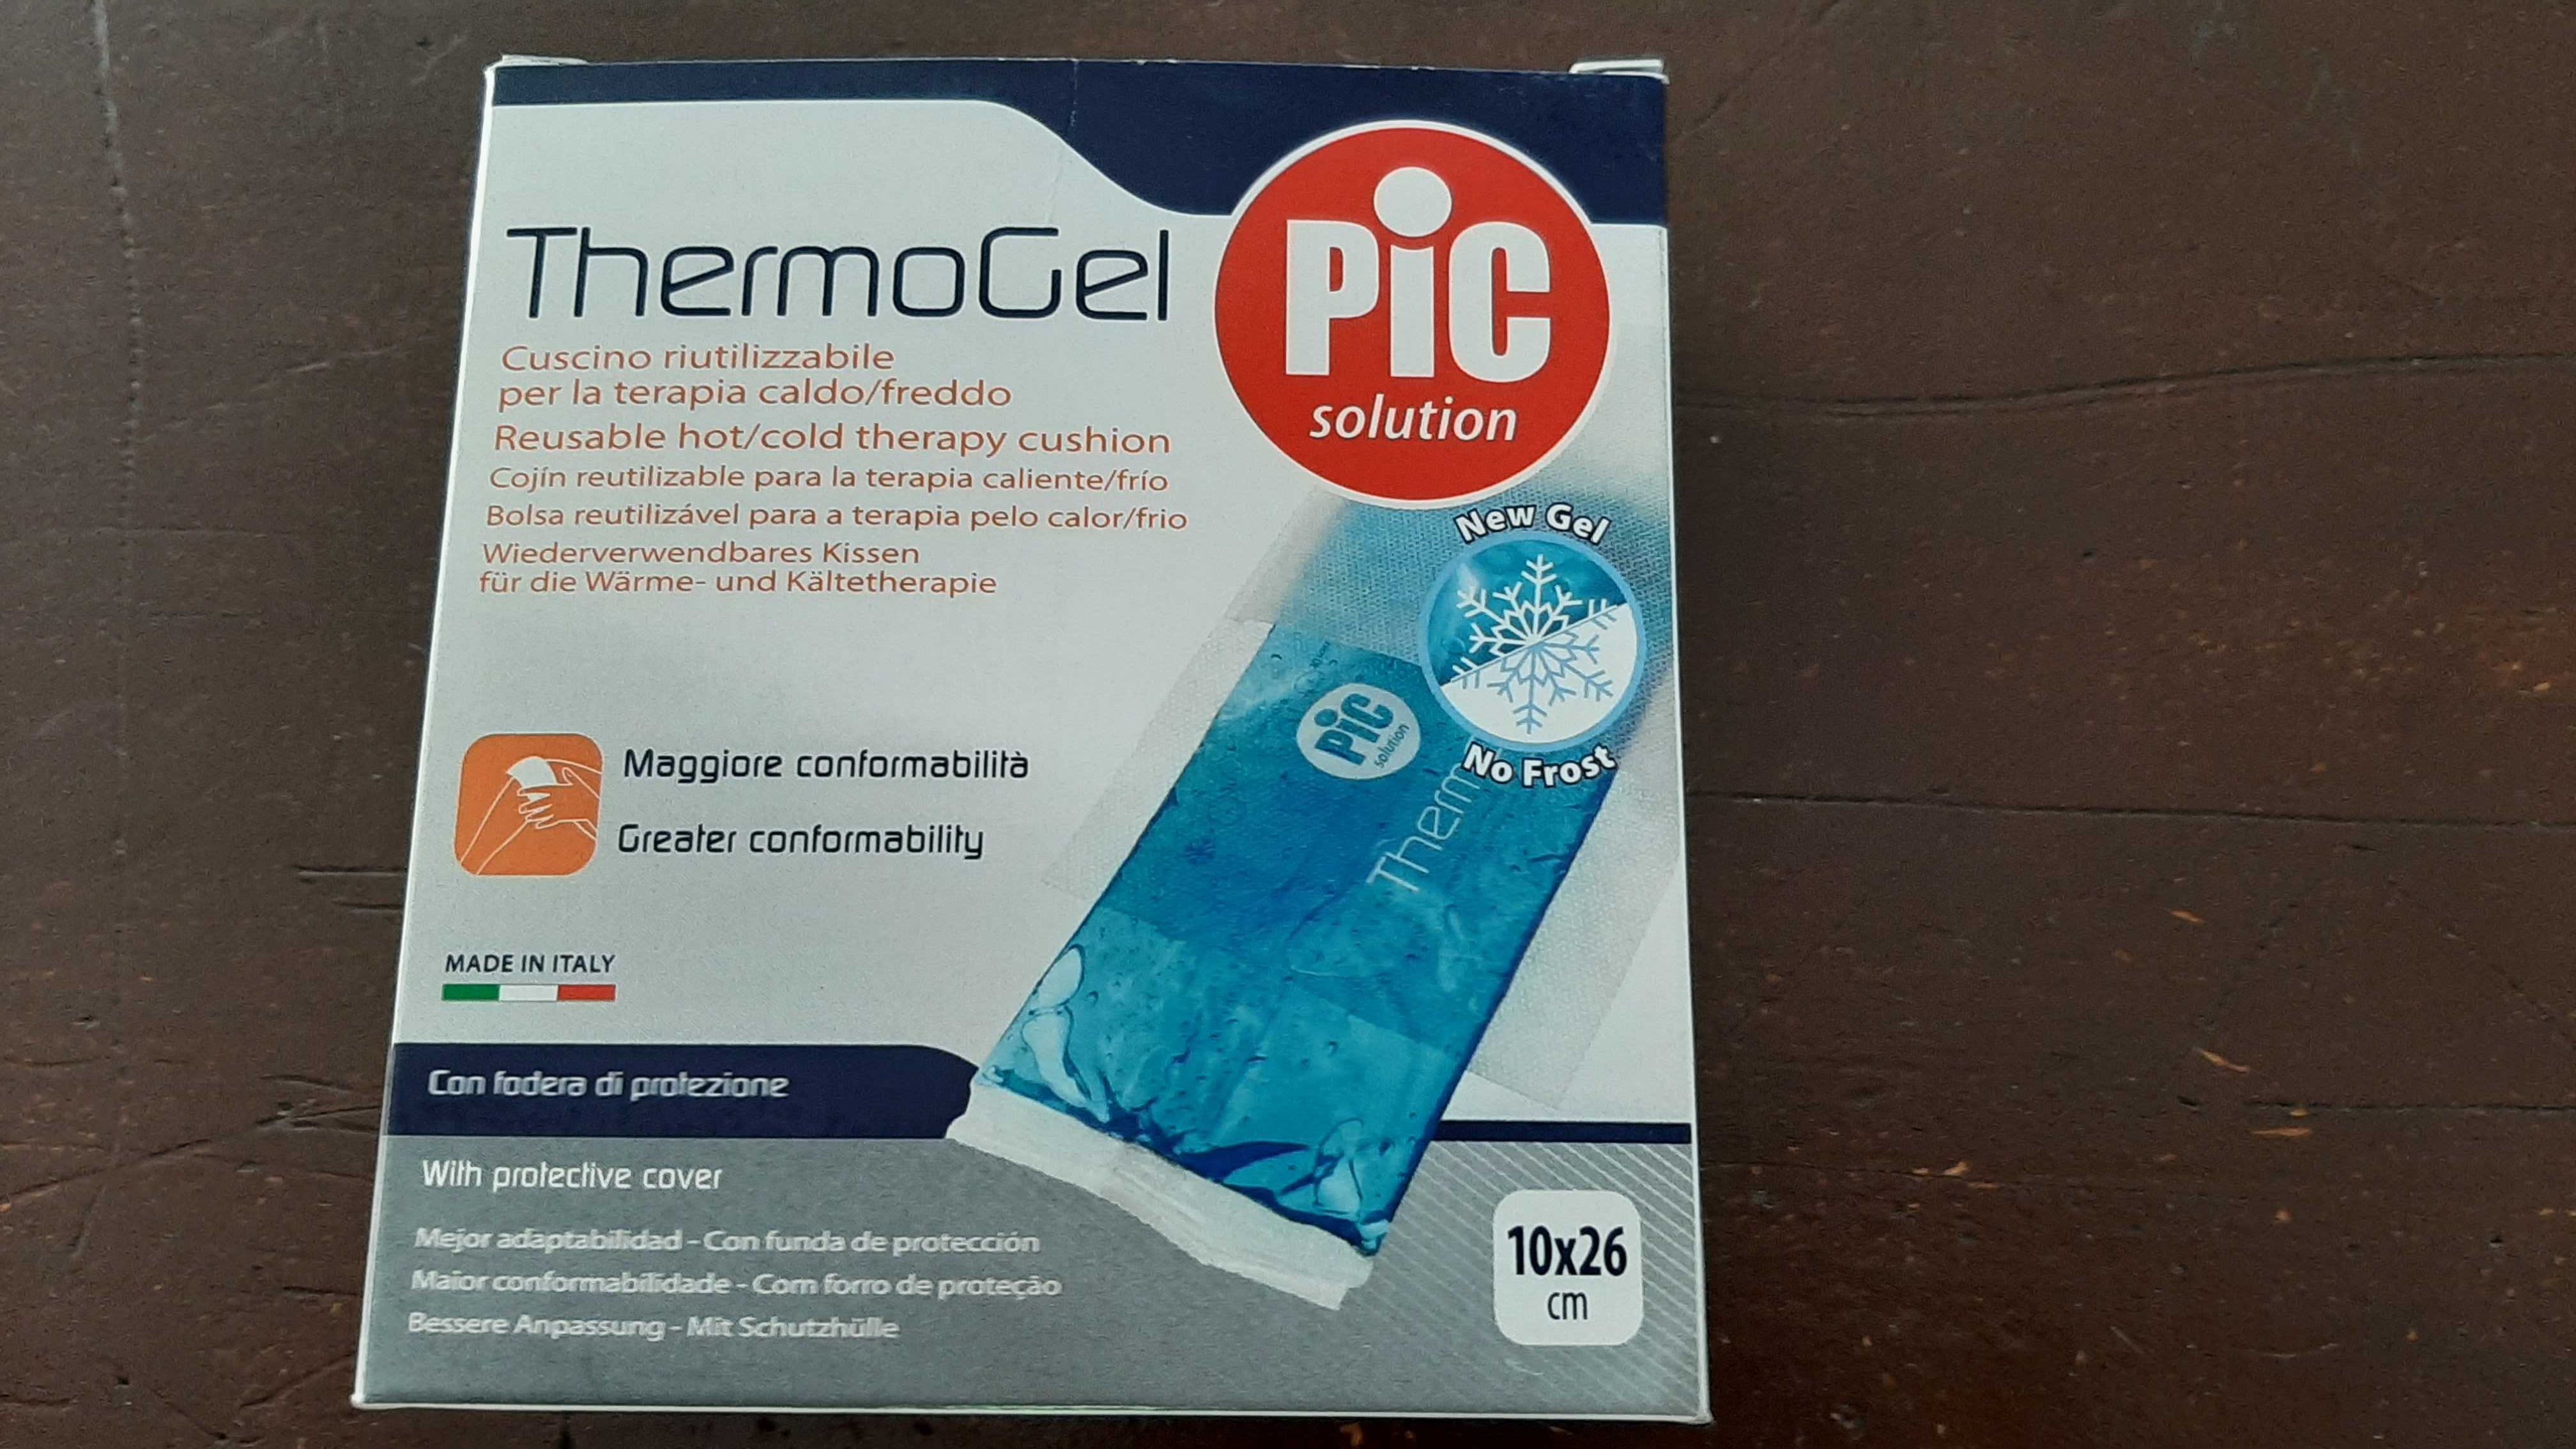 2 x Pic solution Thermogel  żel kompres żelowy leczniczy 10x26cm